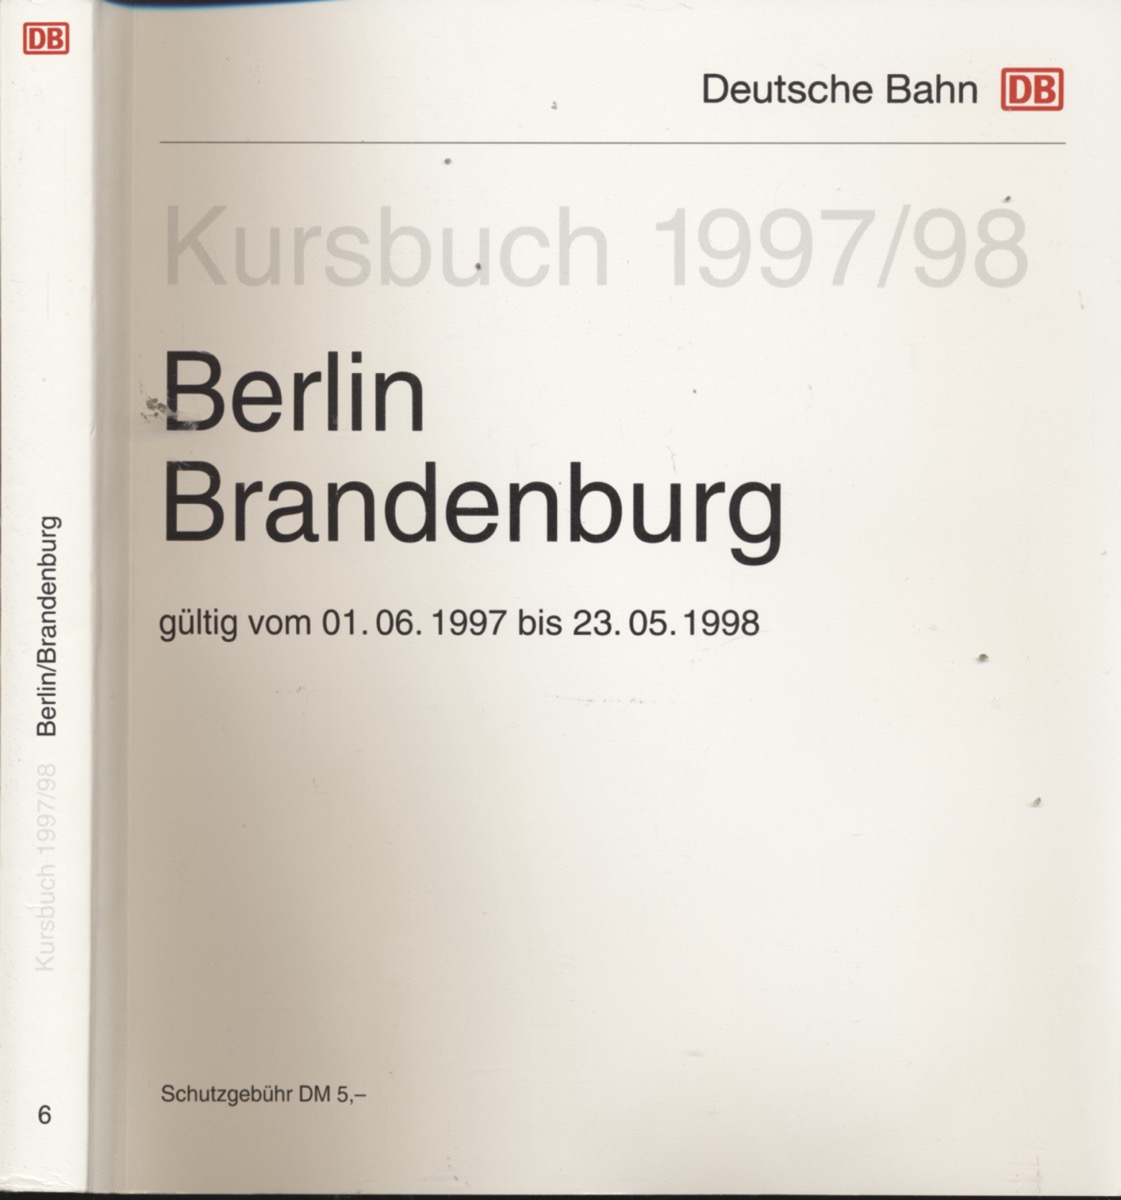 DEUTSCHE BAHN (Hrg.)  Kursbuch Berlin Brandenburg 1997/98, gültig vom 01.06.1997 bis 23.05.1998. 